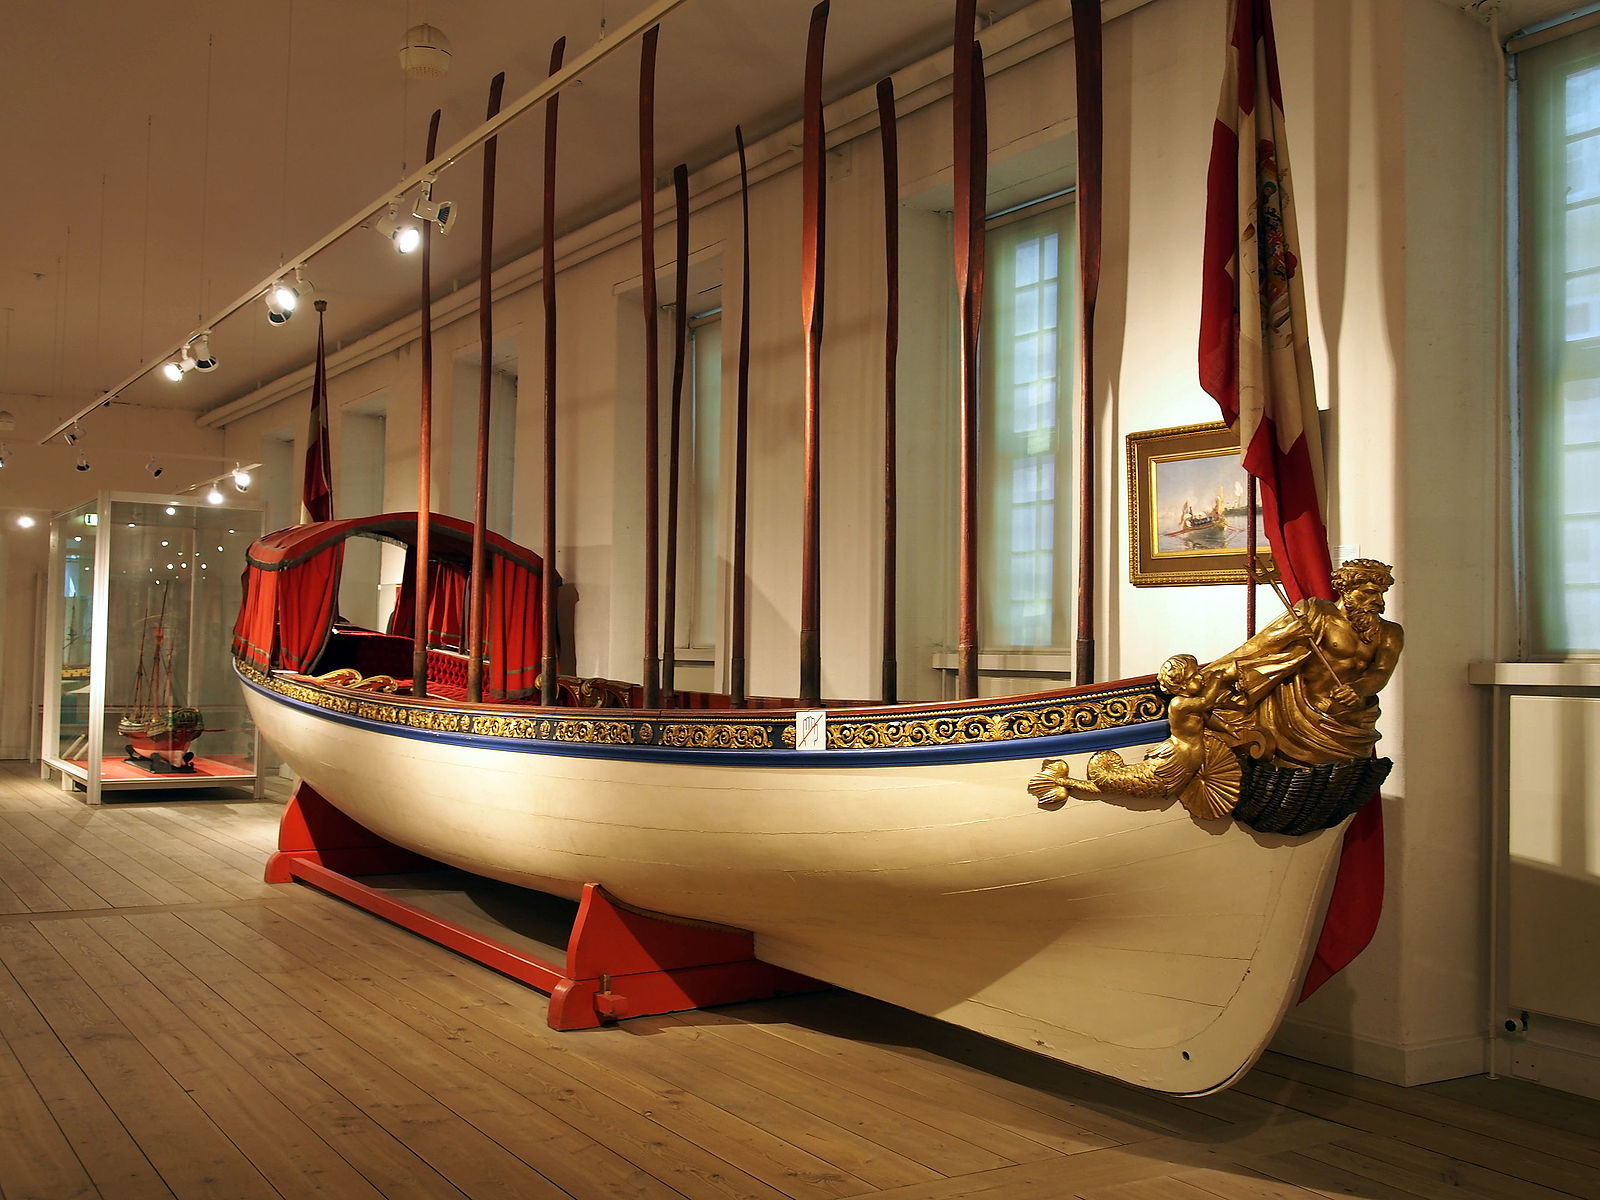 Royal_boat_Royal_Danish_Naval_Museum_pic1.JPG